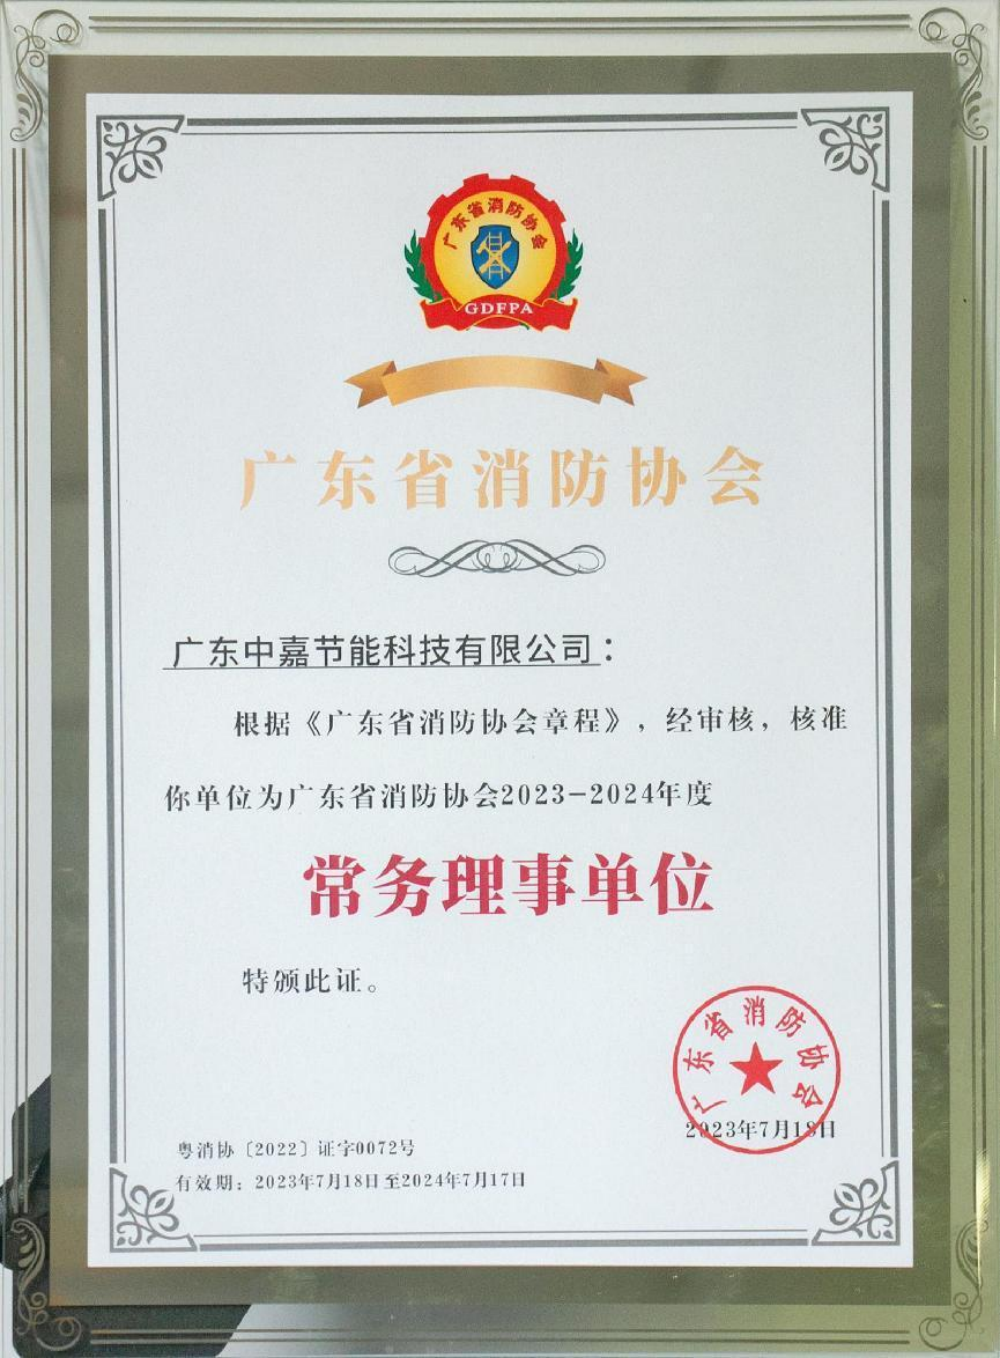 企业风采丨中嘉节能当选广东省消防协会常务理事单位